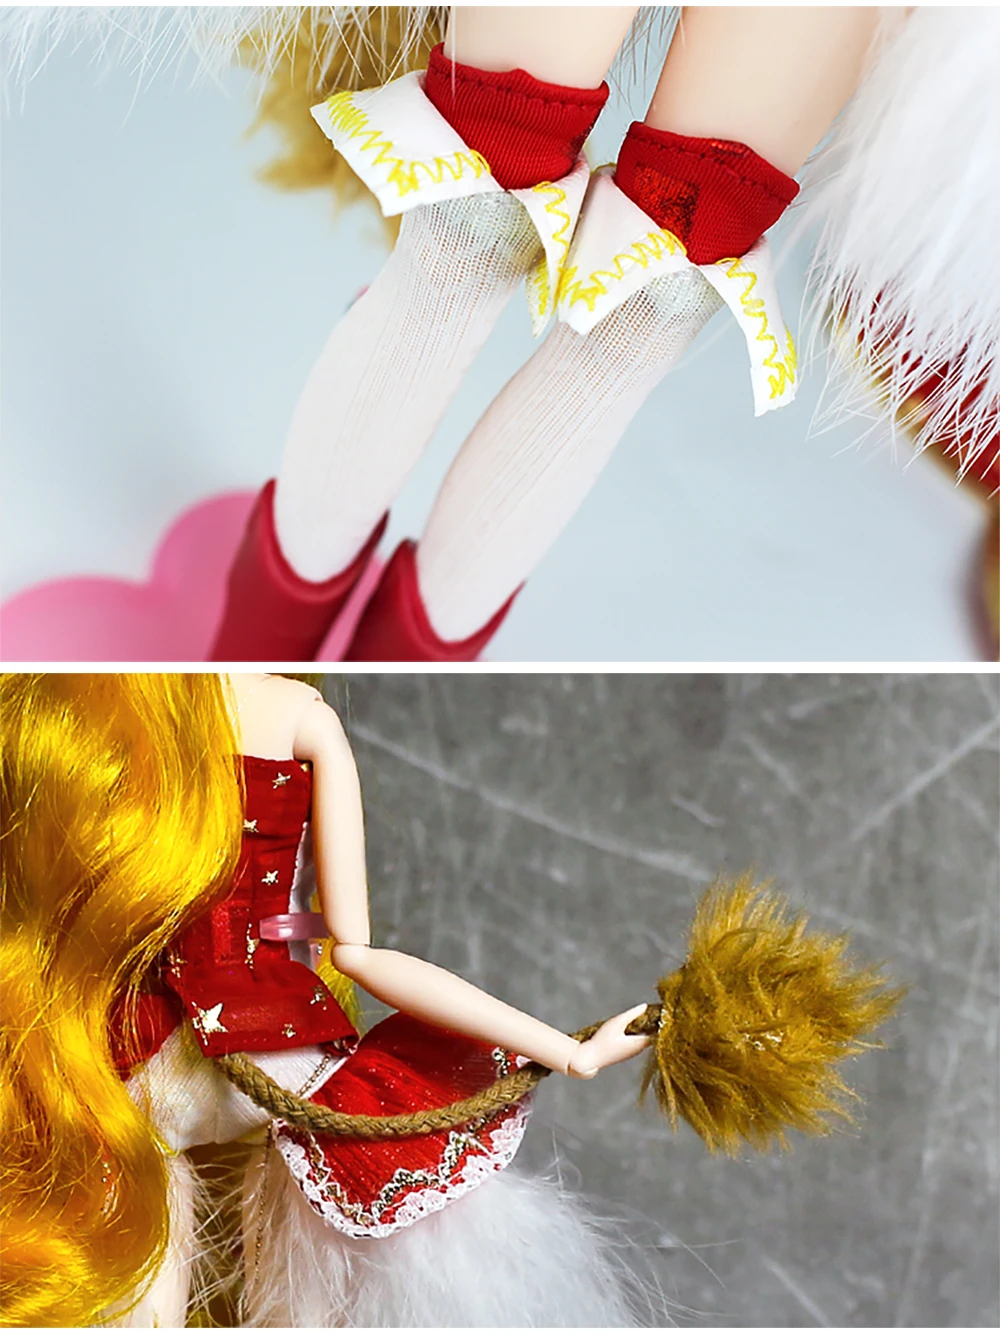 Мм девушка 1/6 BJD кукла Созвездие серии 30 см шарнирная кукла тело имя Leo желтые волосы